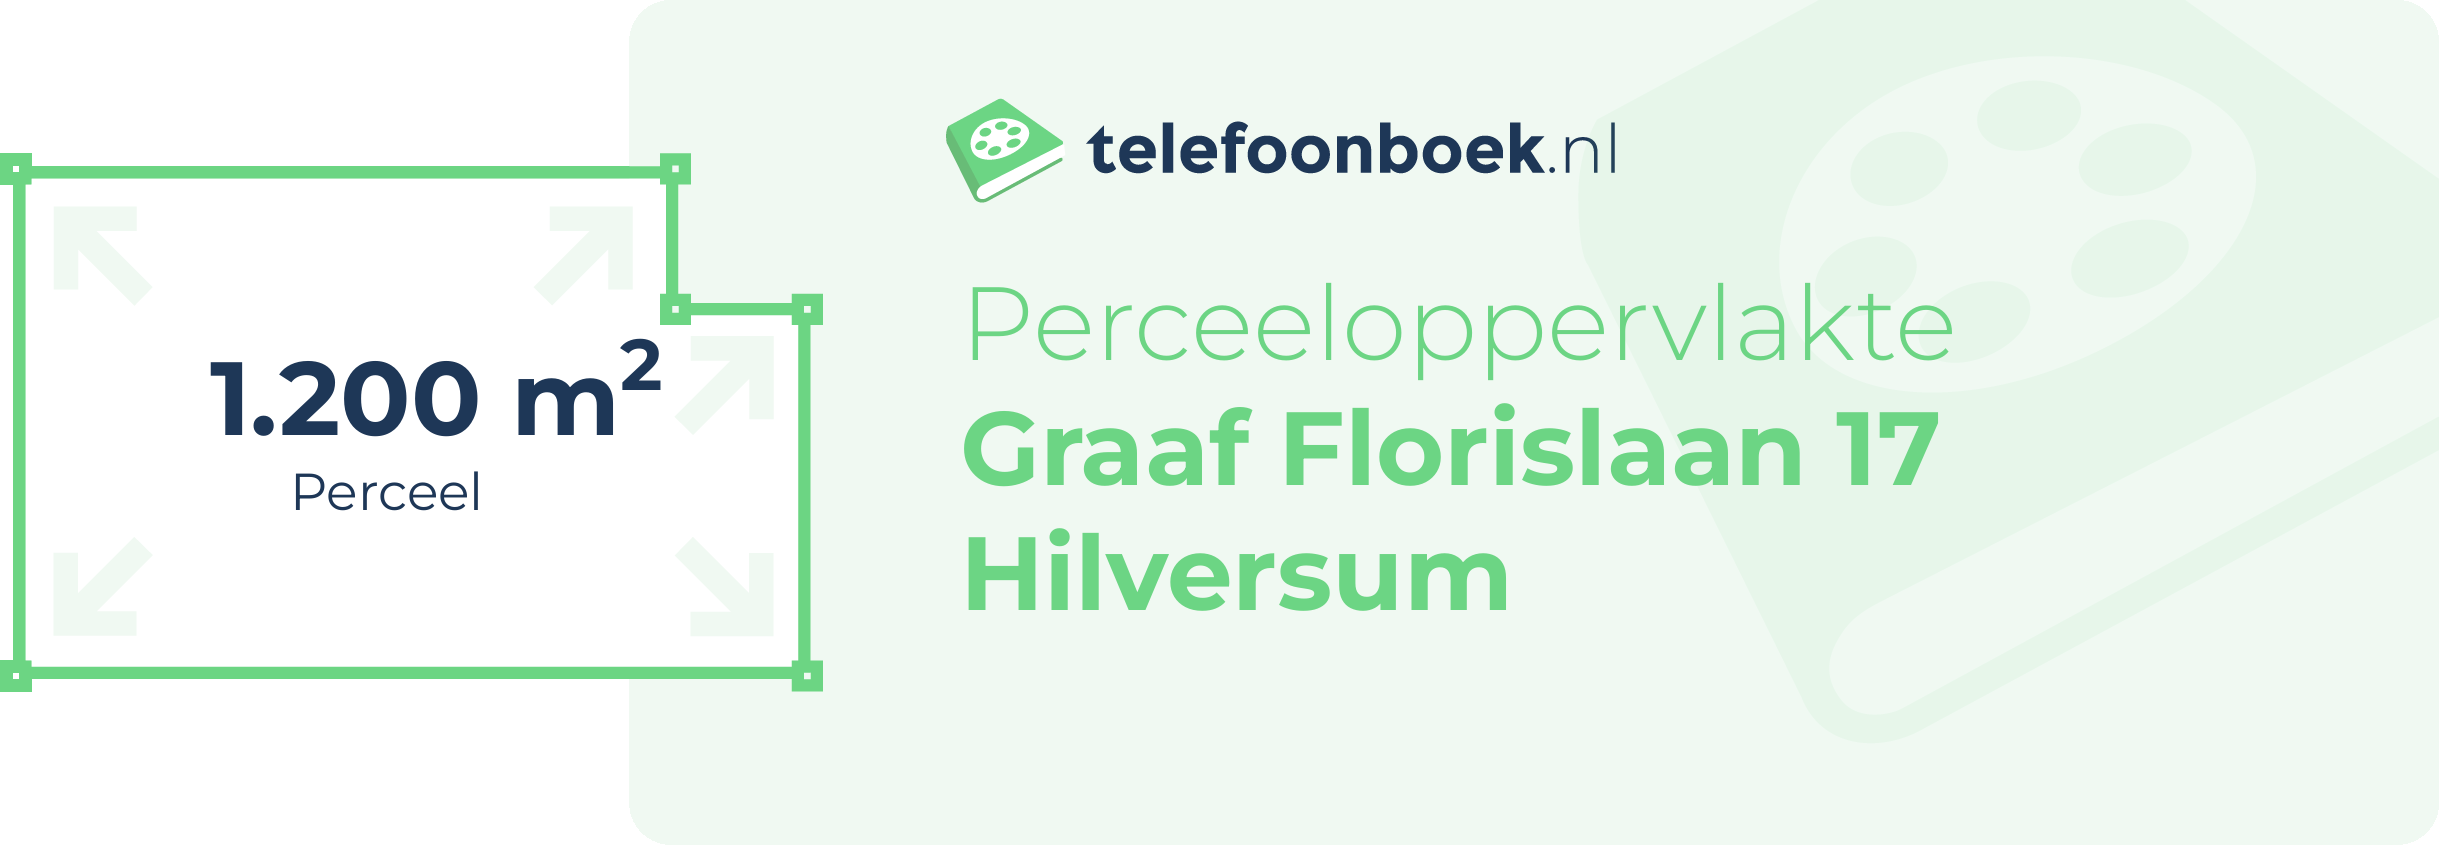 Perceeloppervlakte Graaf Florislaan 17 Hilversum